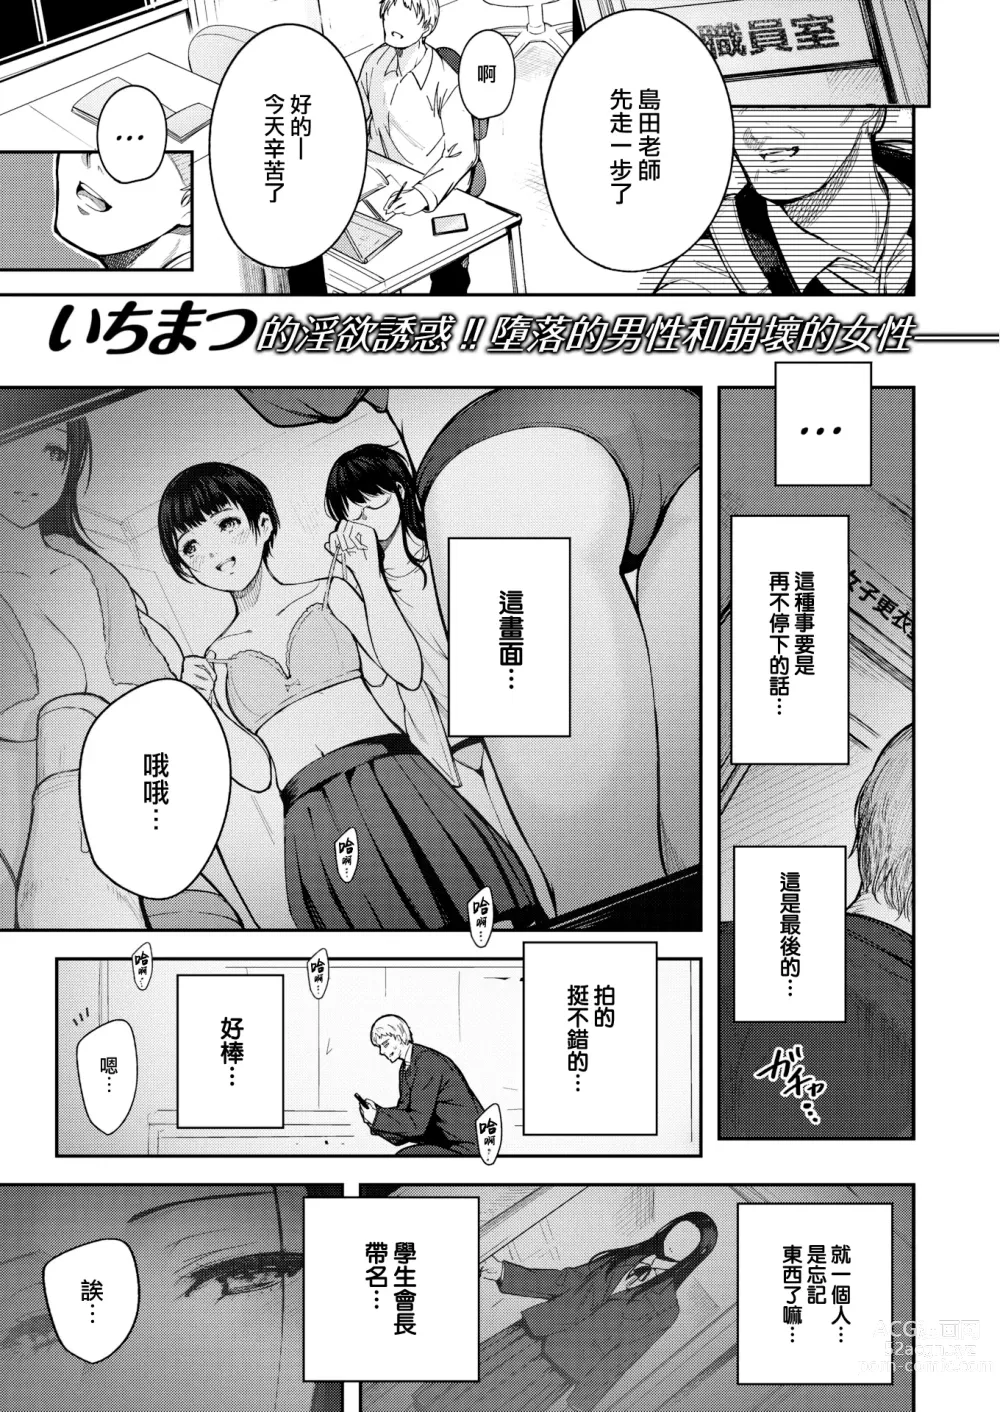 Page 2 of manga Kankou